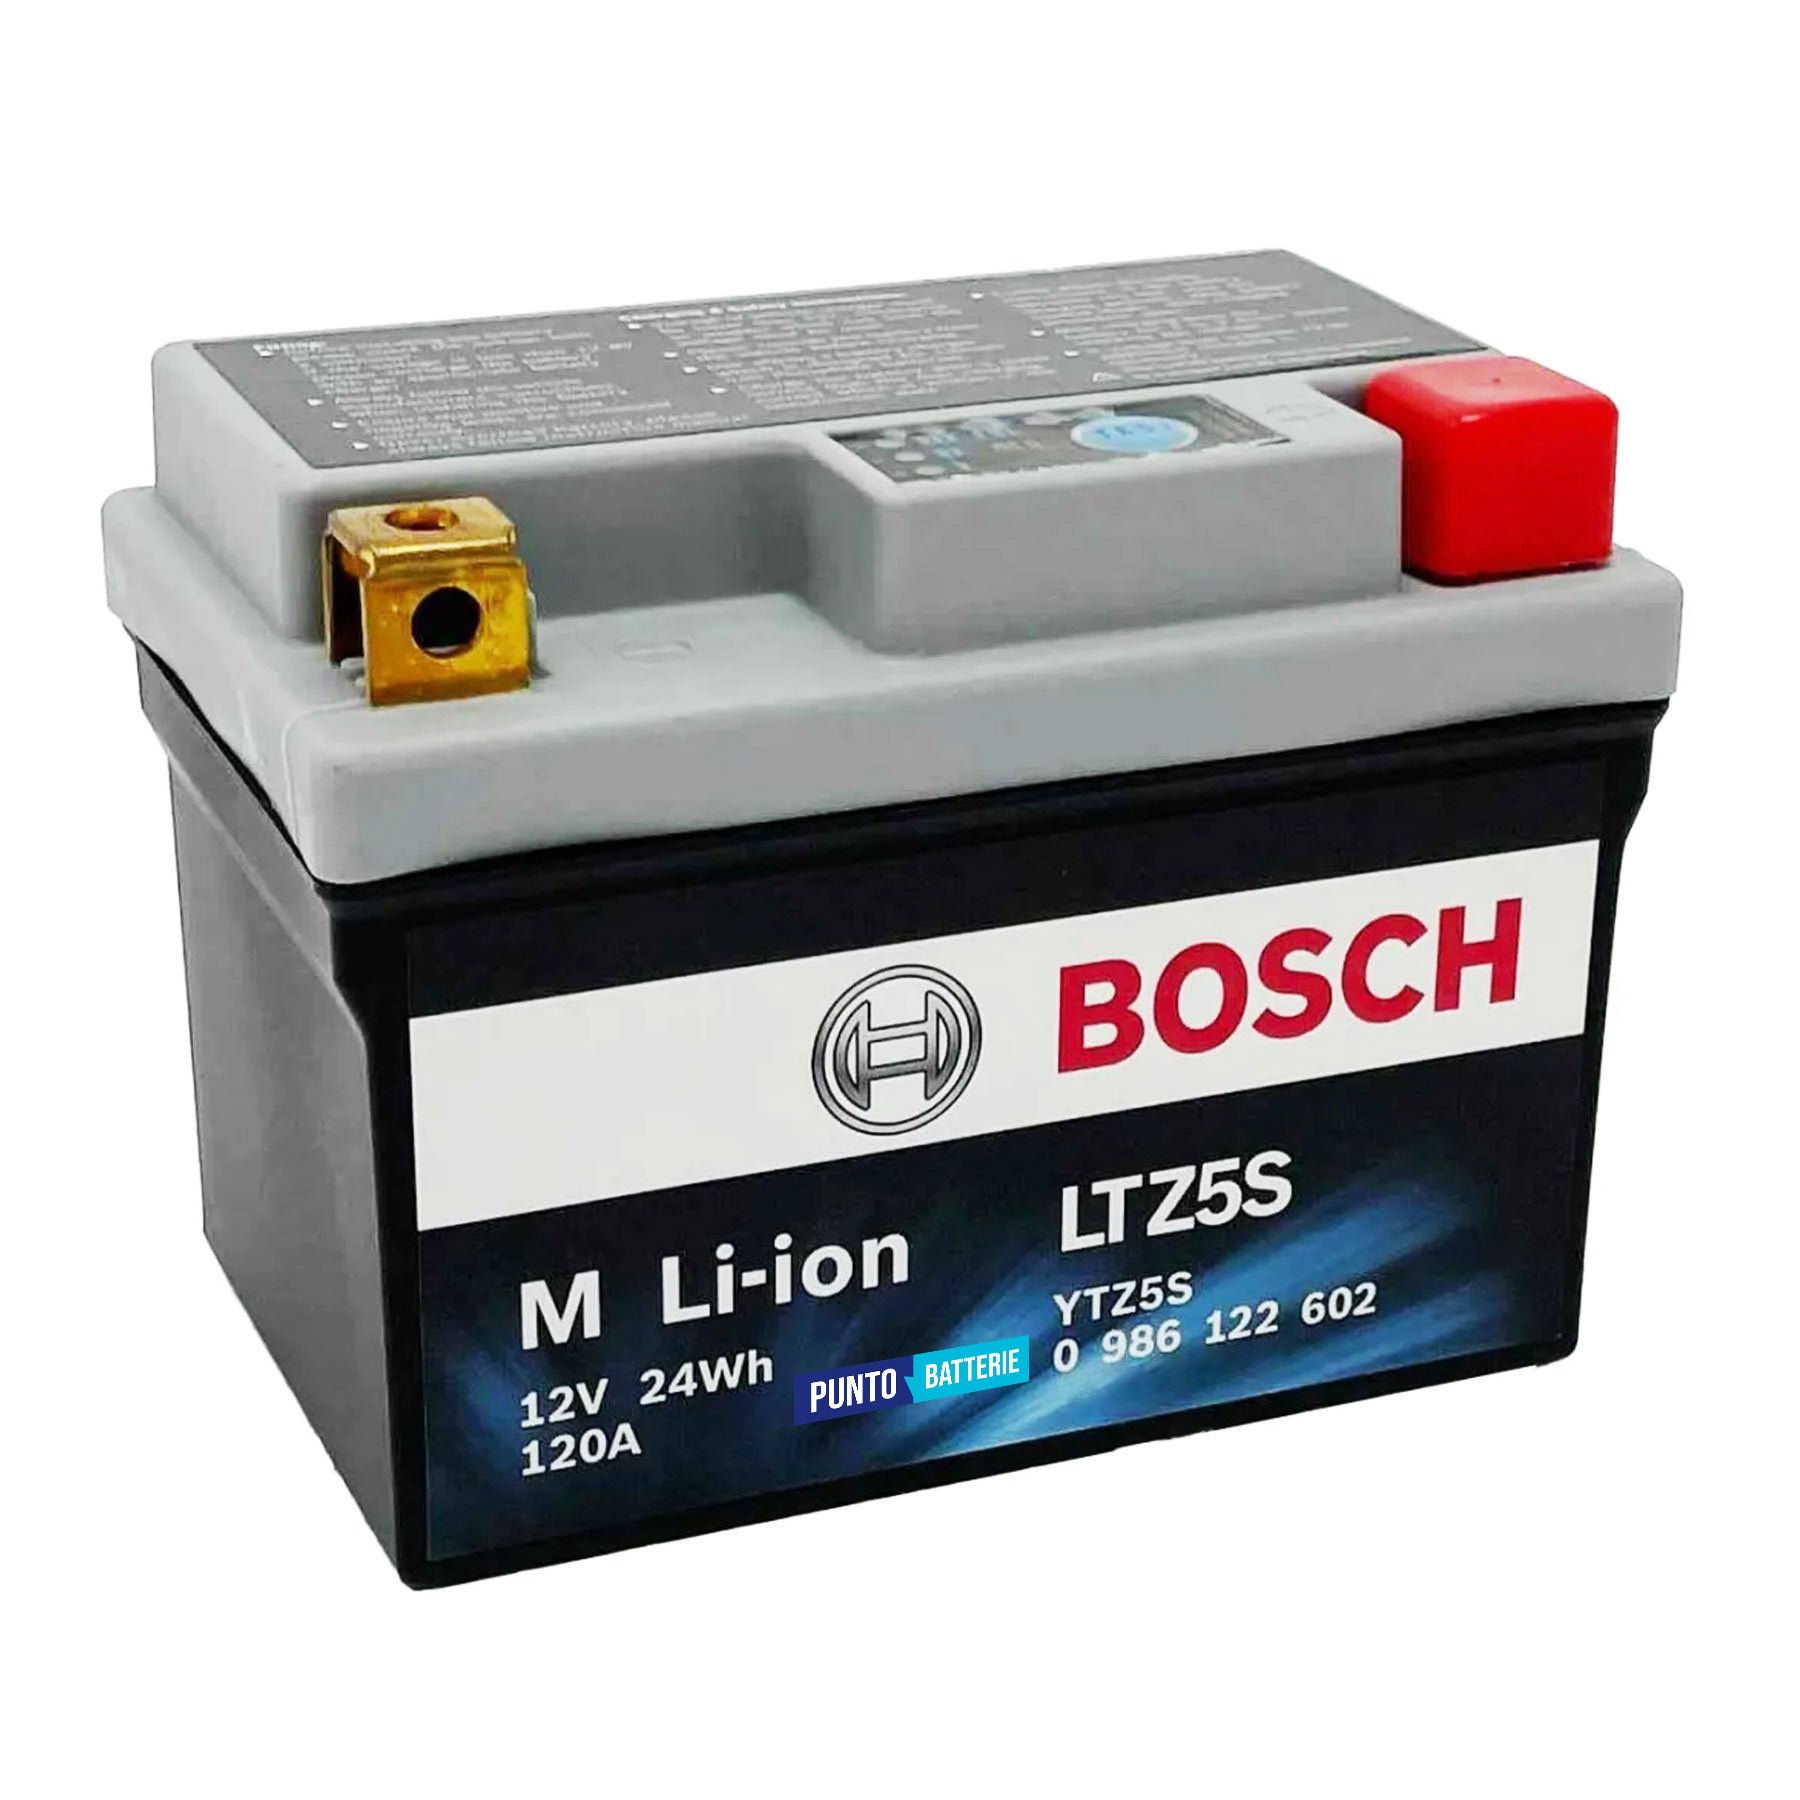 Batteria originale Bosch M Li-ion LTZ5S, dimensioni 150 x 87 x 143, polo positivo a destra, 12 volt, 2 amperora, 120 ampere. Batteria per moto, scooter e powersport.